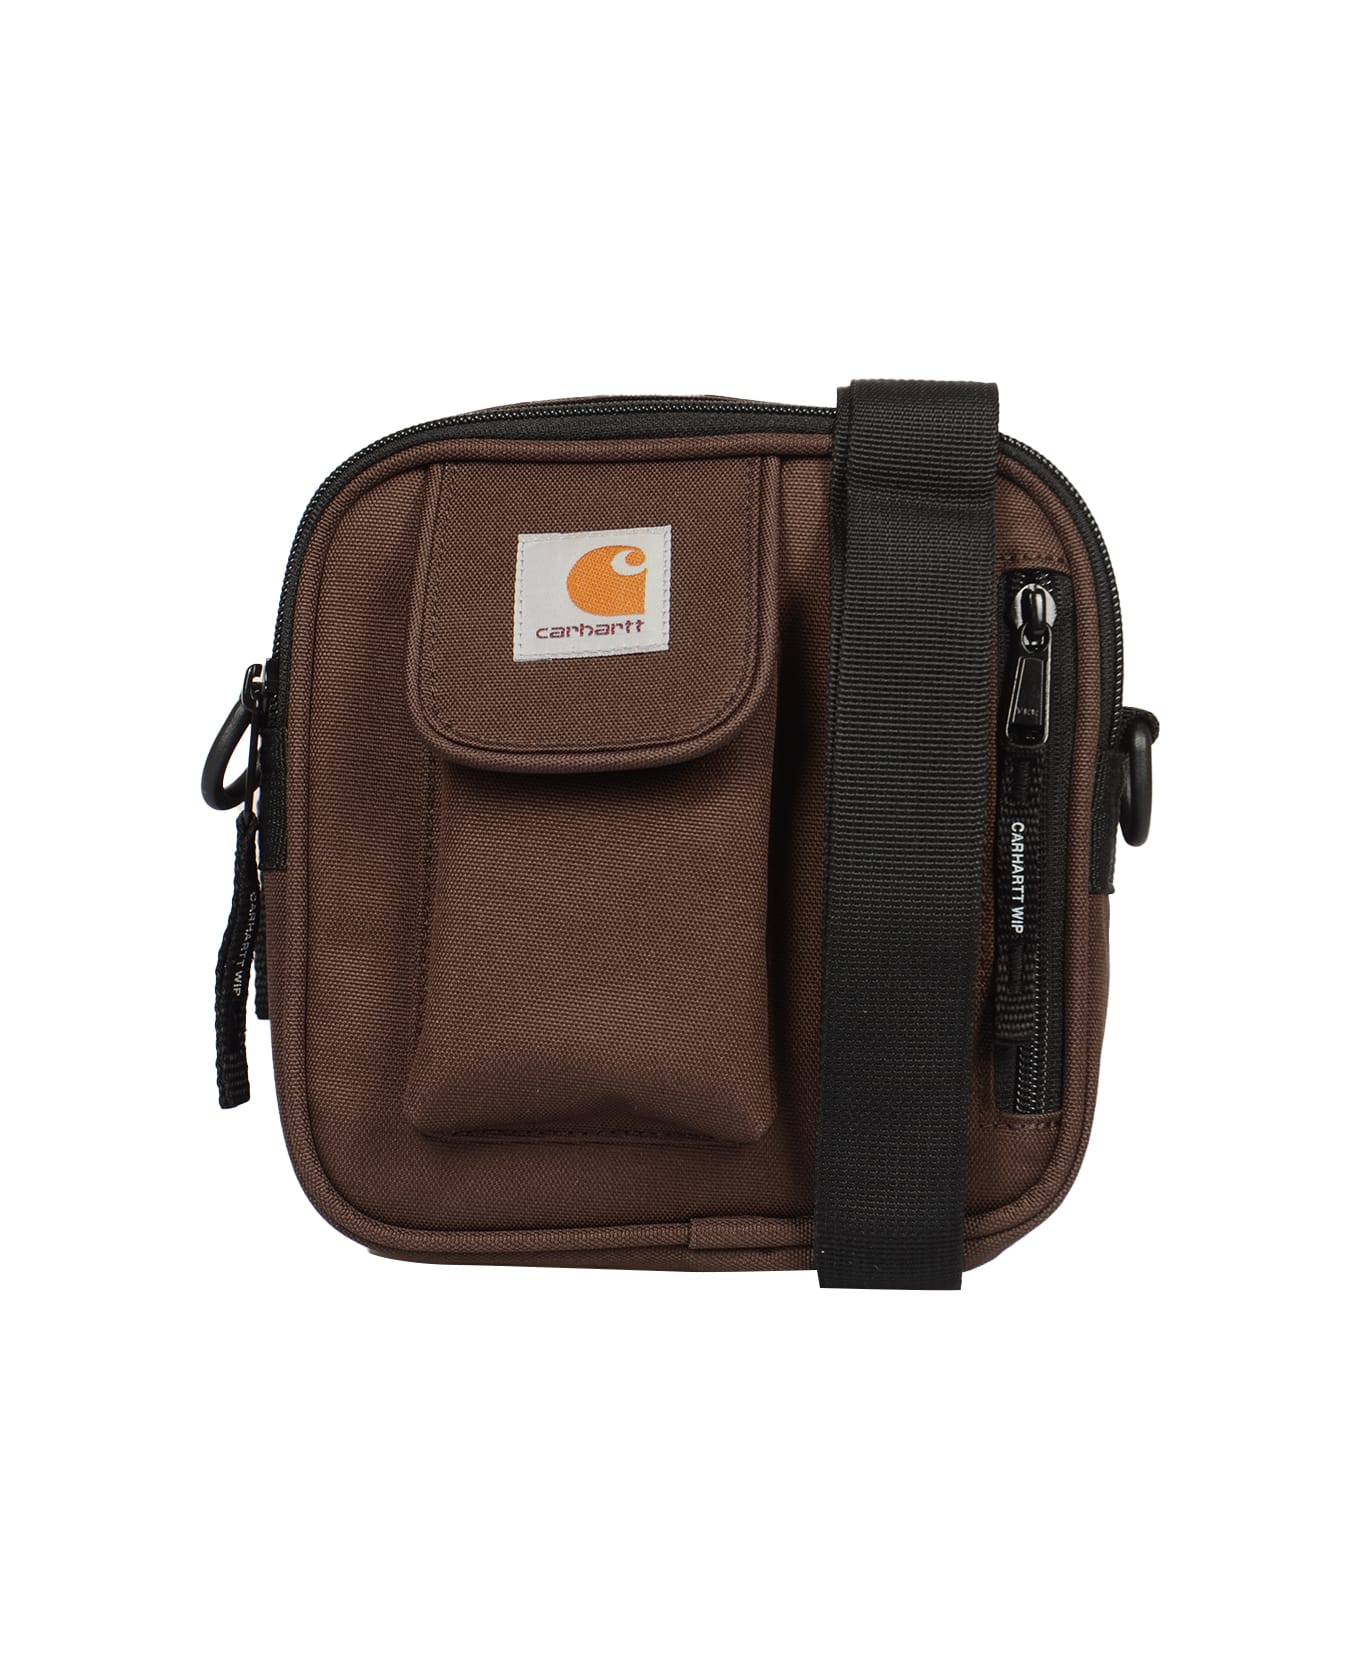 Carhartt Essentials Small Shoulder Bag - BROWN